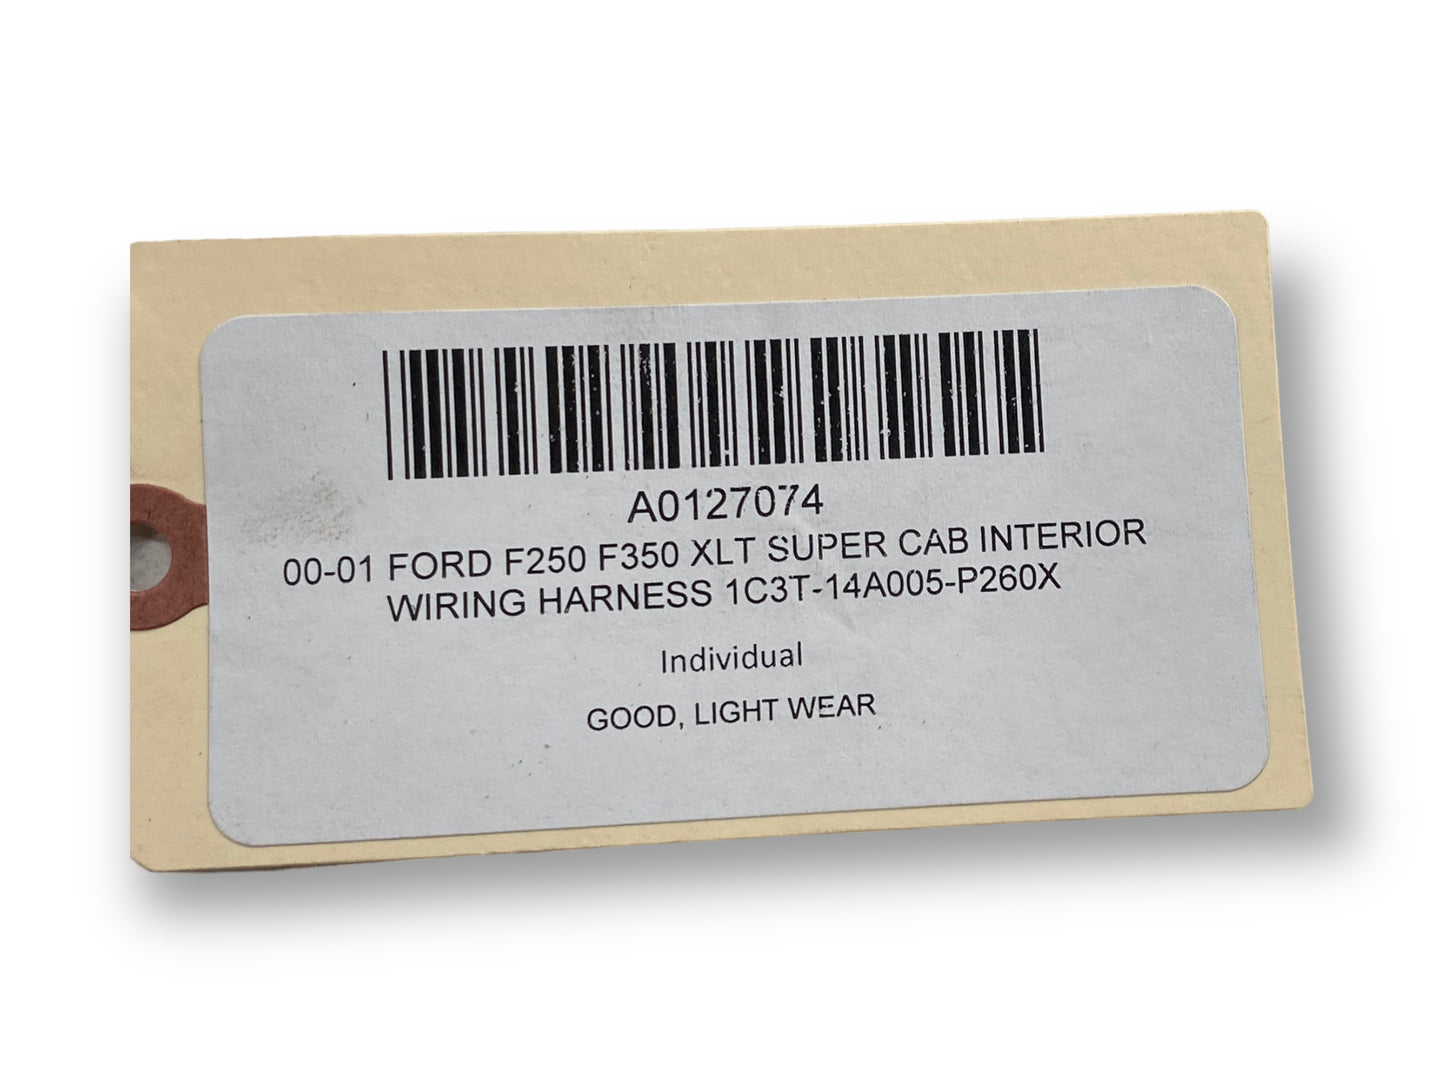 00-01 Ford F250 F350 XLT Super Cab Interior Wiring Harness 1C3T-14A005-P260X